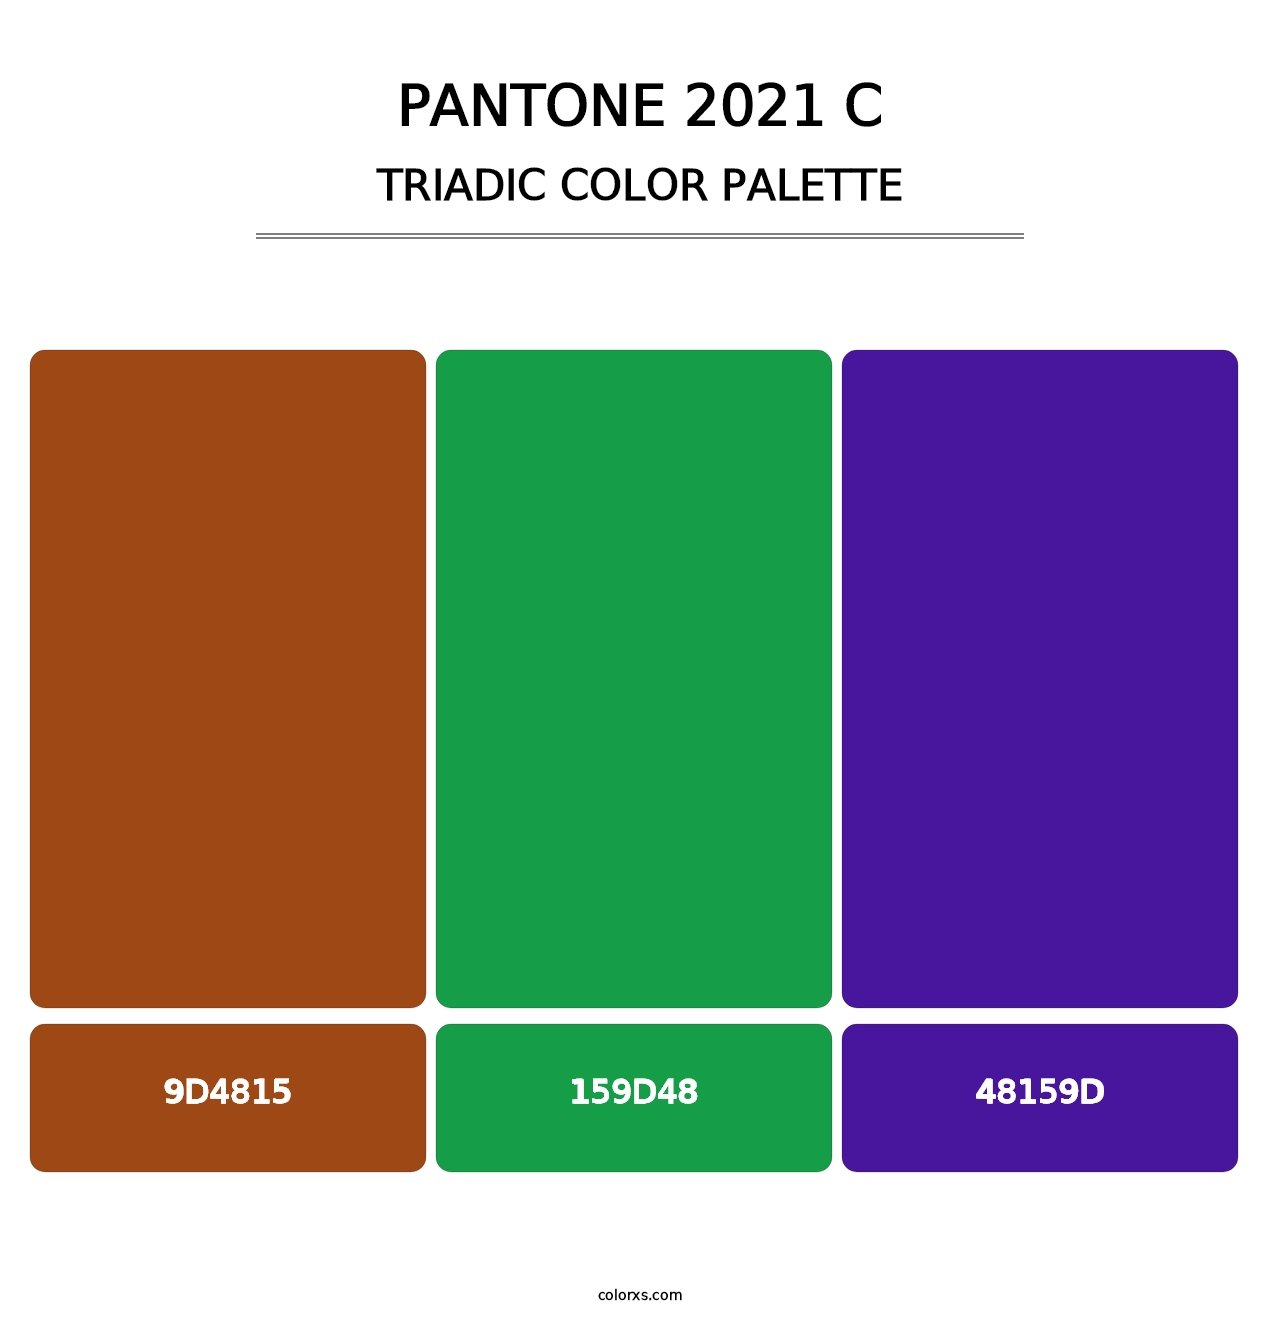 PANTONE 2021 C - Triadic Color Palette